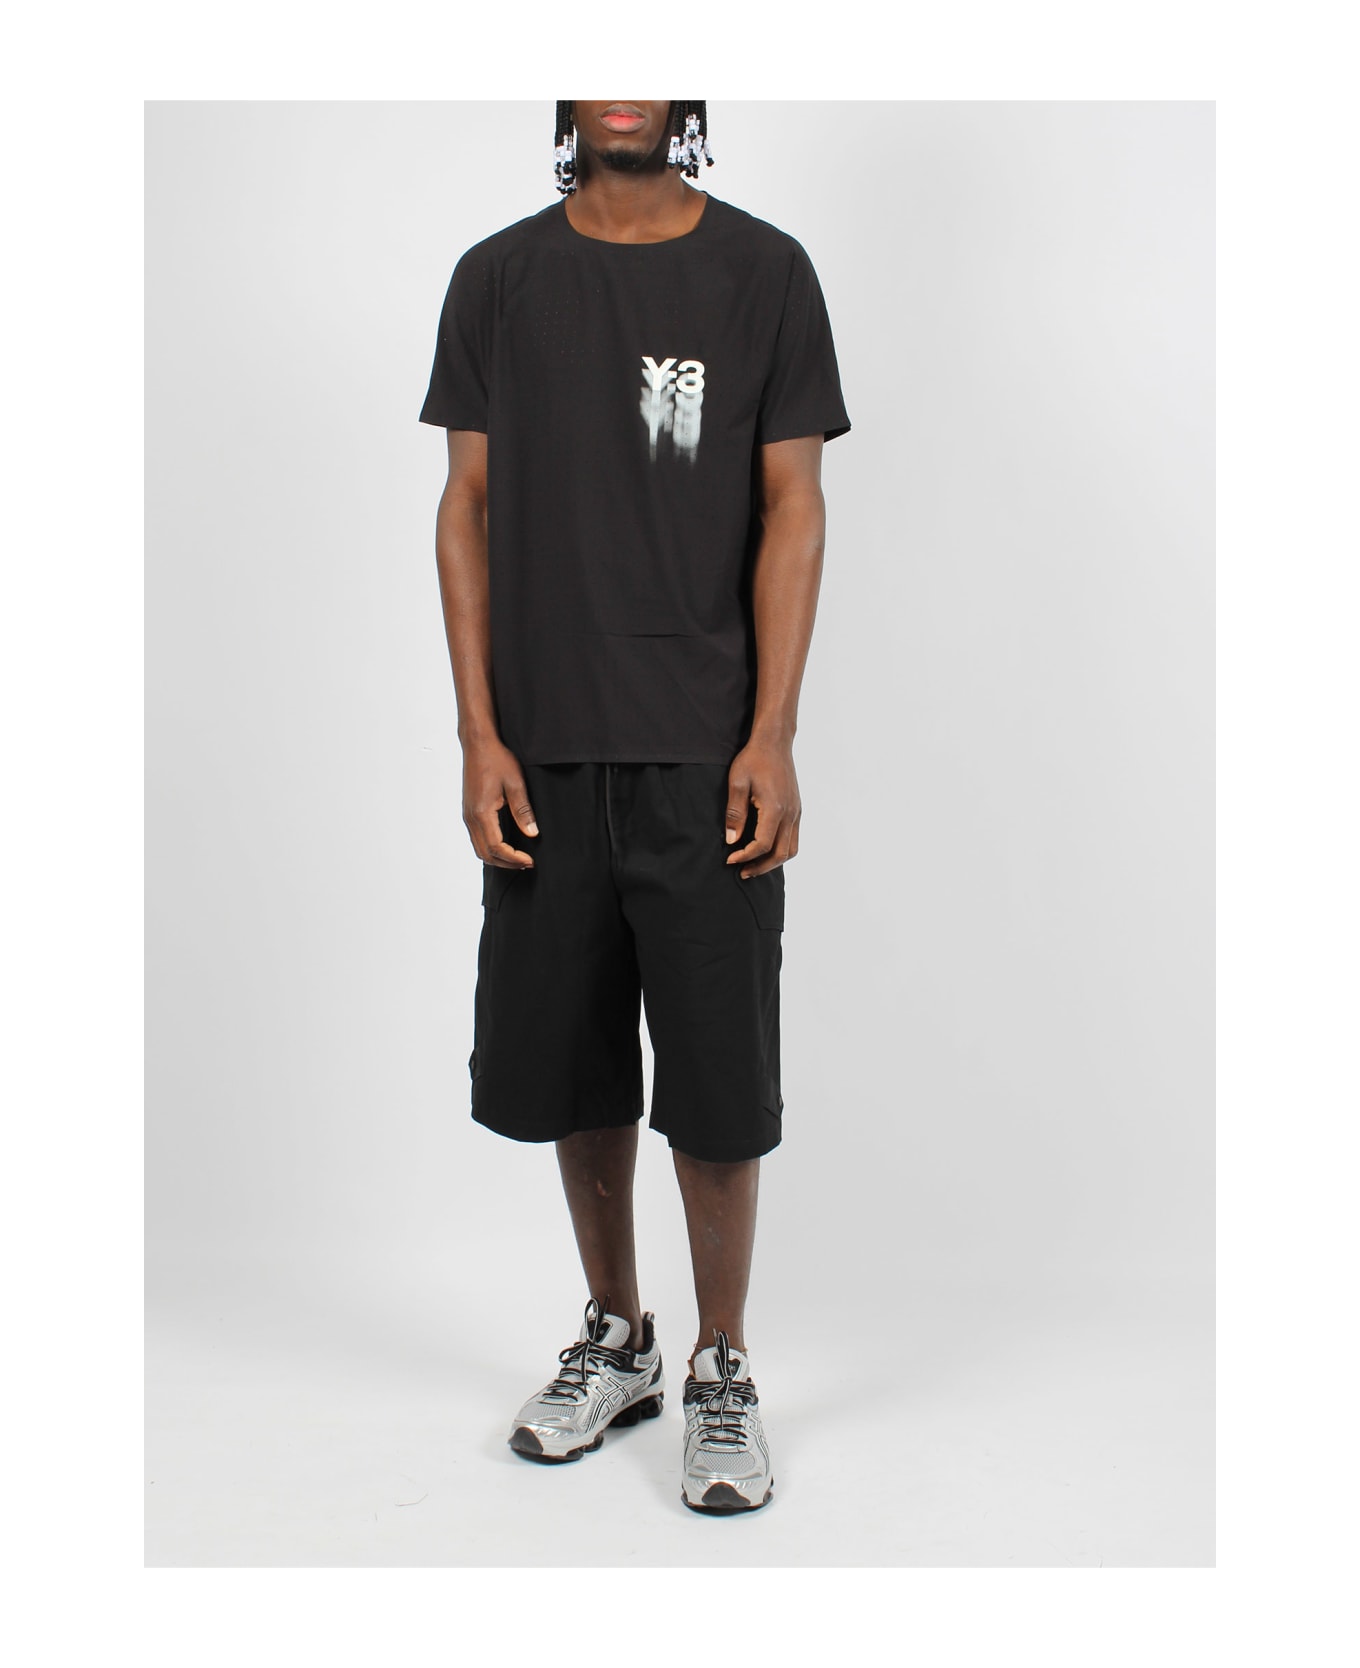 Y-3 Wrkwr Shorts - Black ショートパンツ